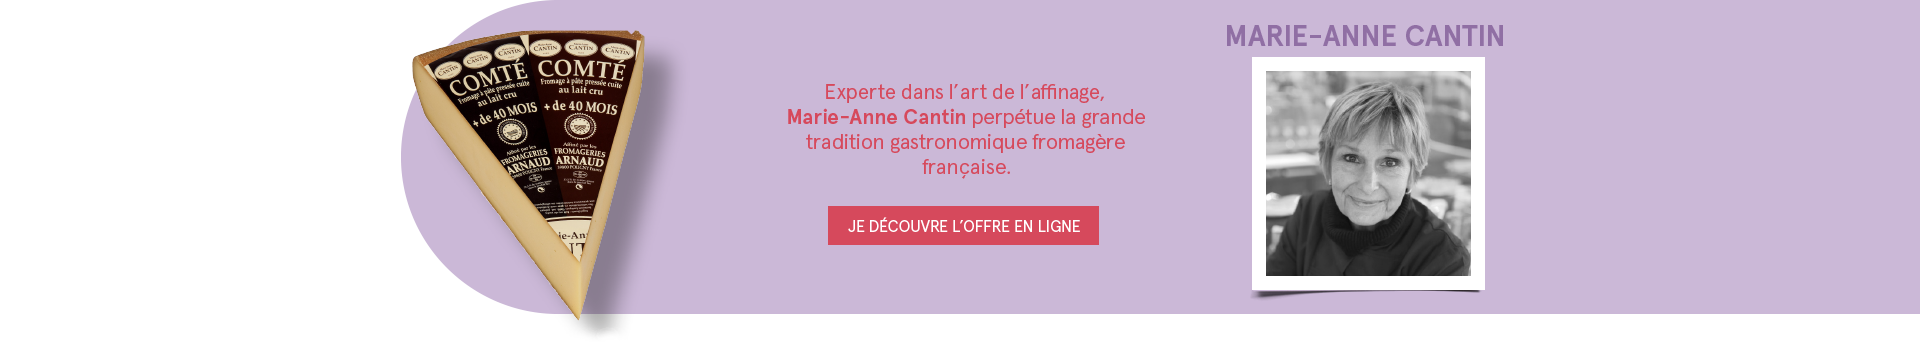 MARIE-ANNE CANTIN - Experte dans l'art de l'affinage, Marie-Anne Cantin perpétue la grande tradition gastronomique fromagère française. - JE DÉCOUVRE L'OFFRE EN LIGNE